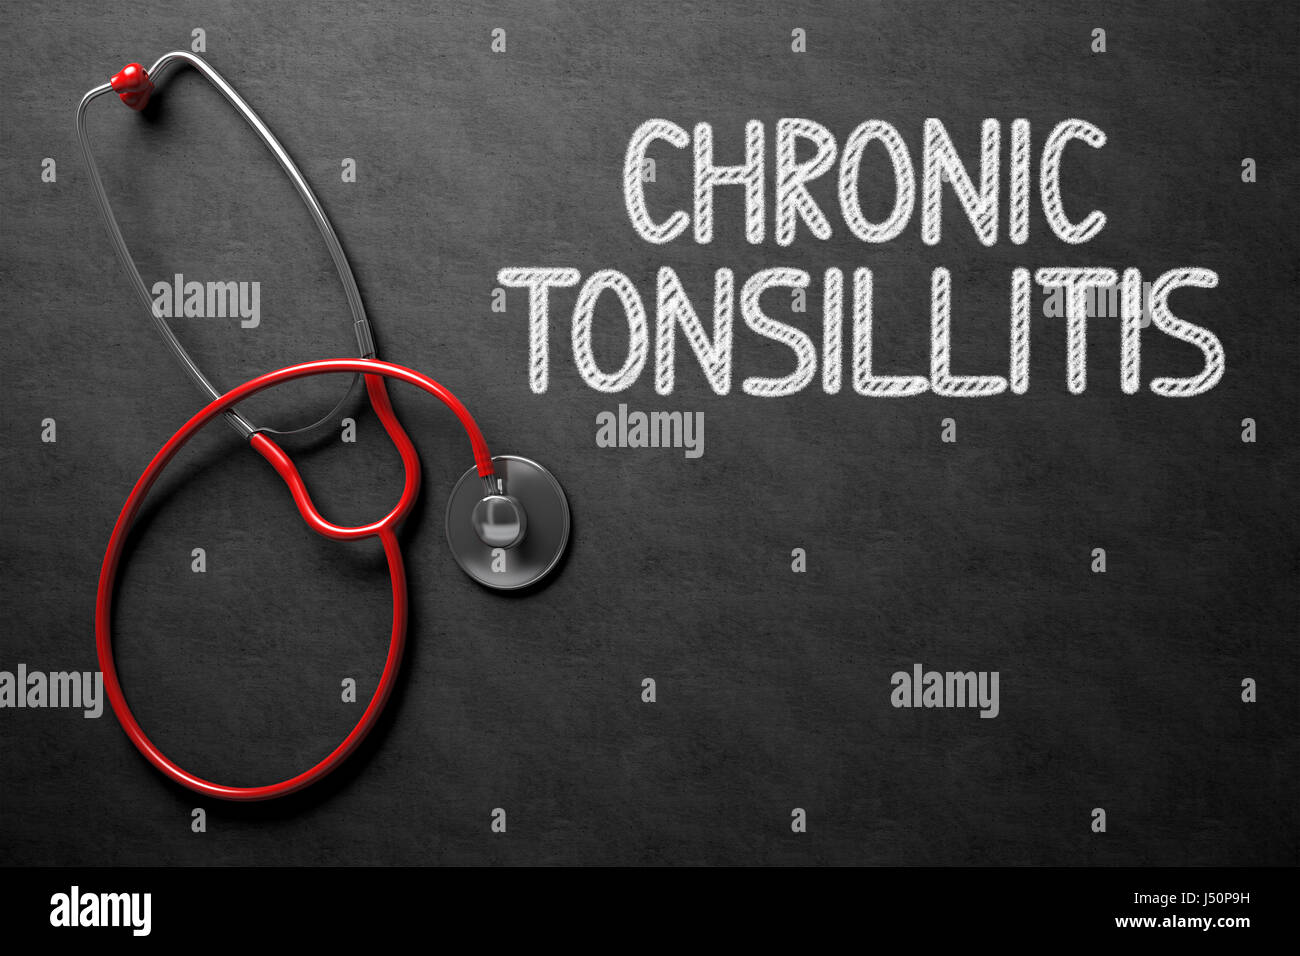 Chronic Tonsillitis - Text on Chalkboard. 3D Illustration. Stock Photo